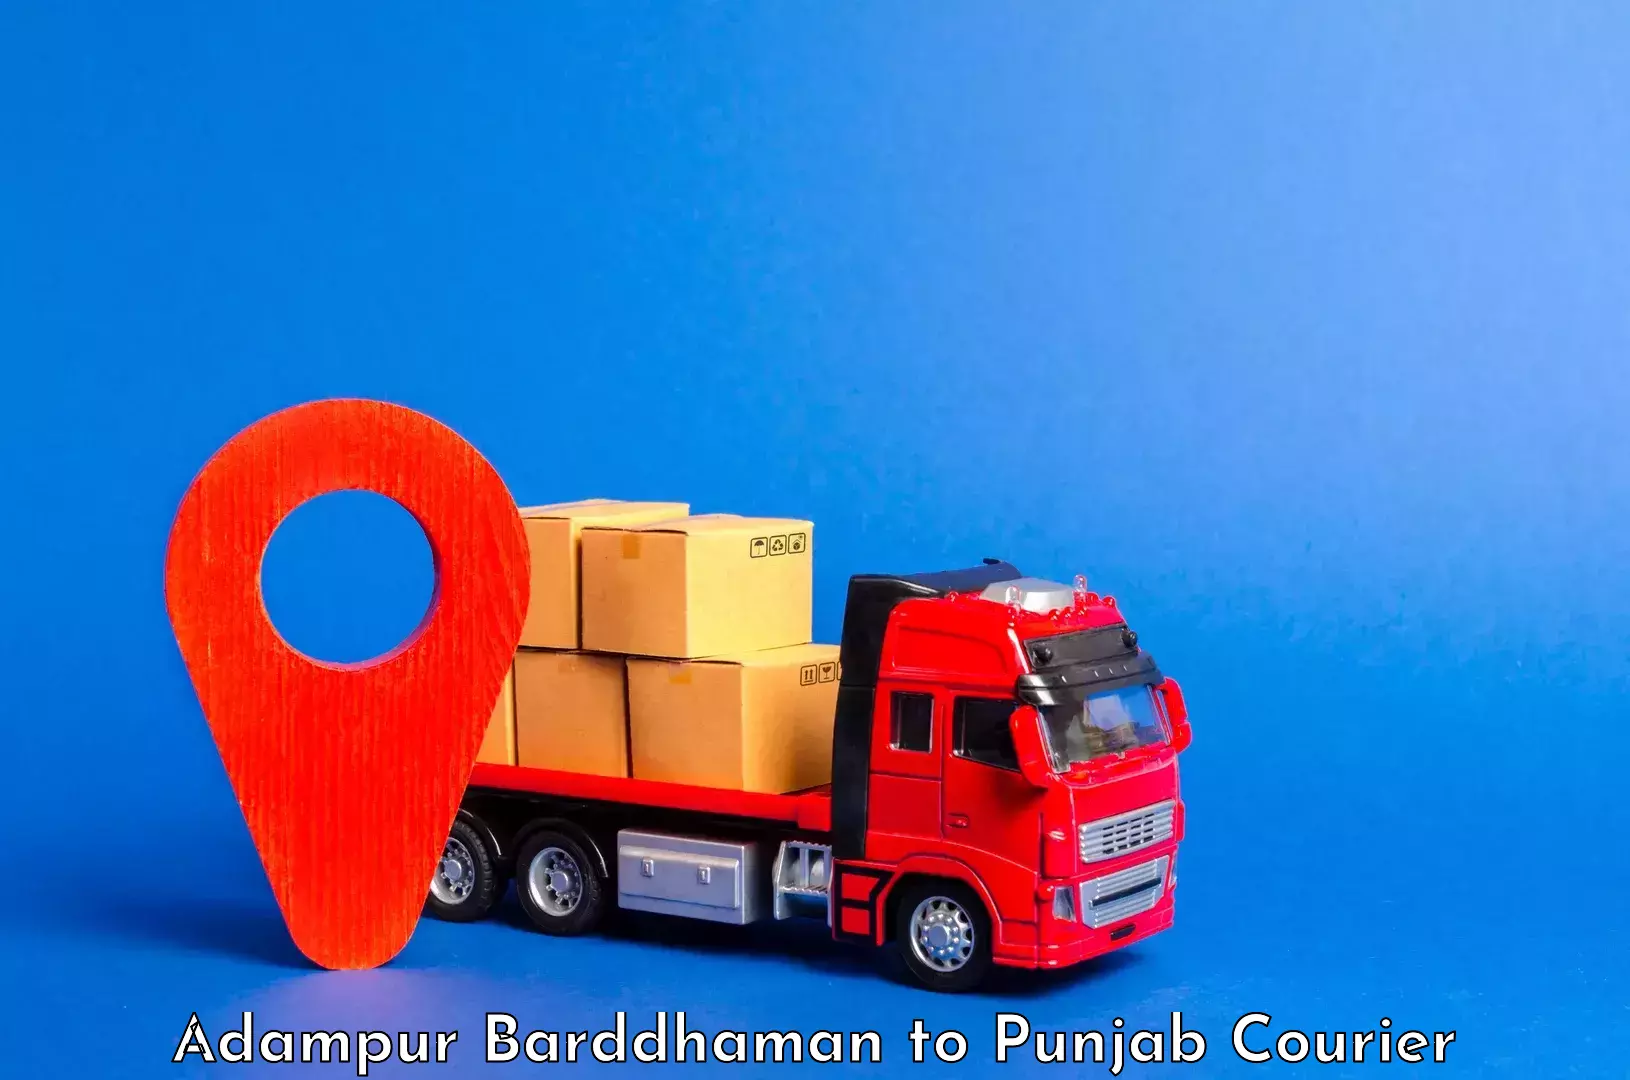 Light baggage courier Adampur Barddhaman to Punjab